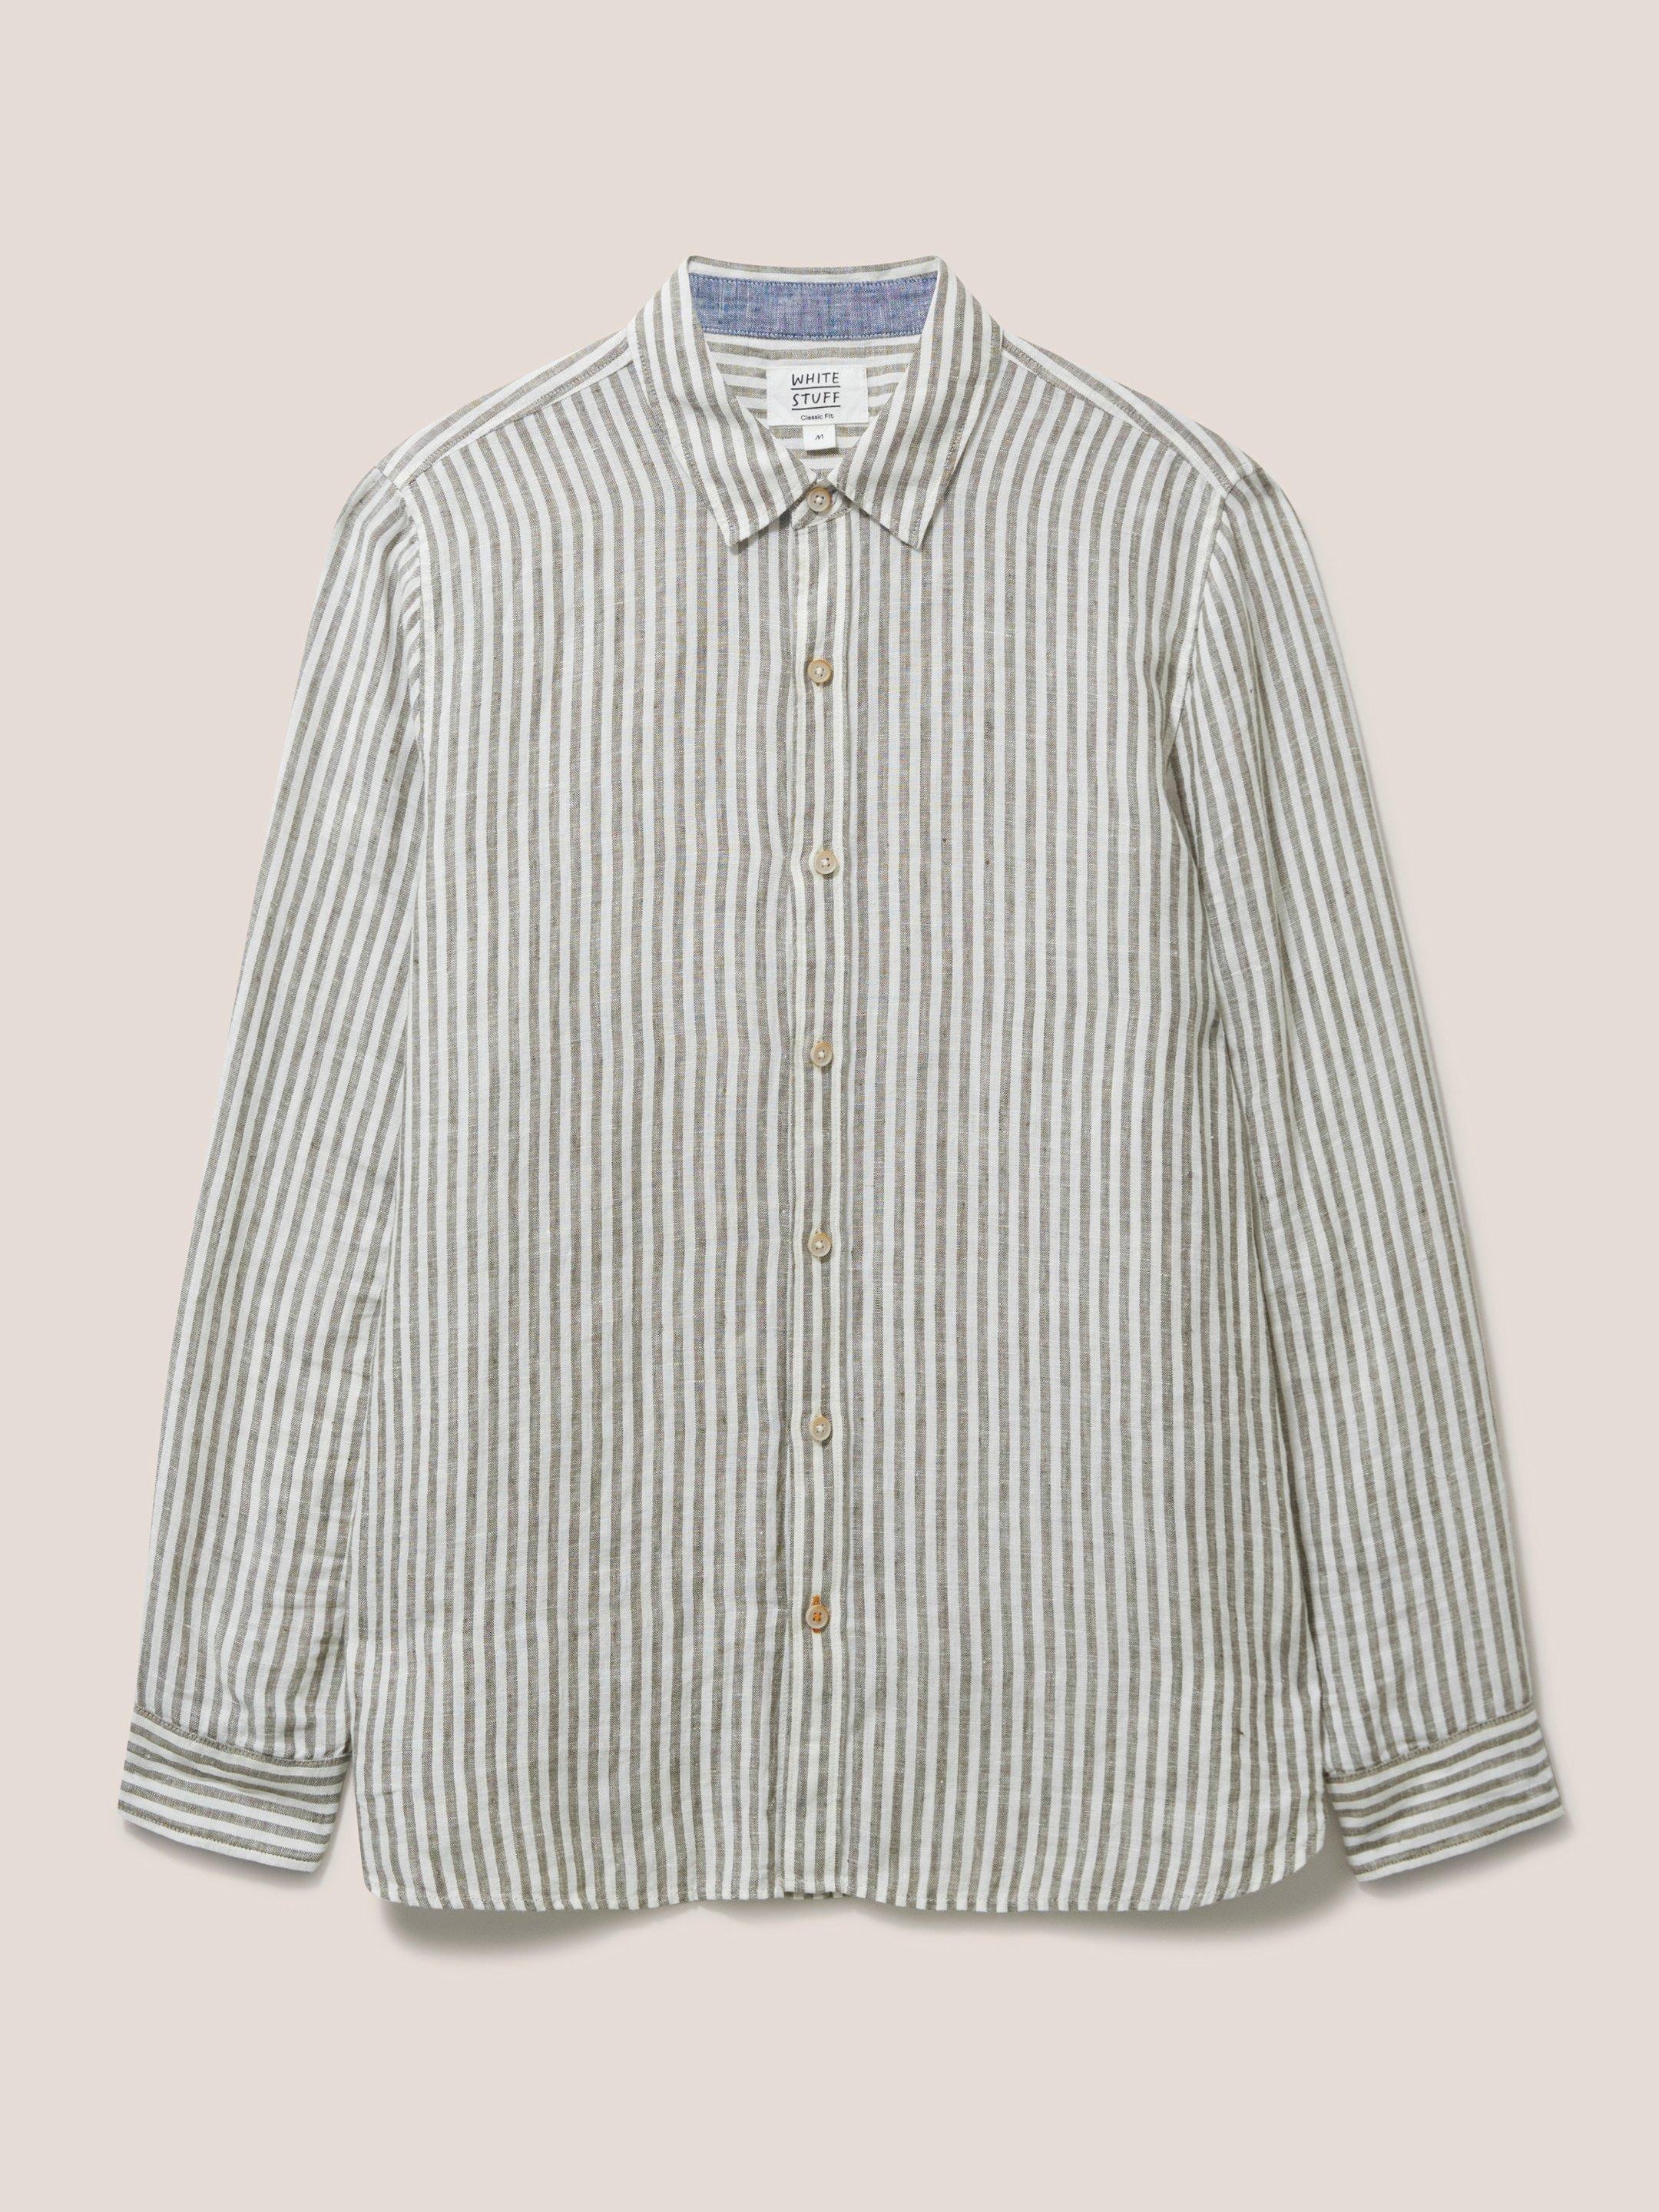 Pembroke LS Stripe Linen Shirt in KHAKI GRN - FLAT FRONT